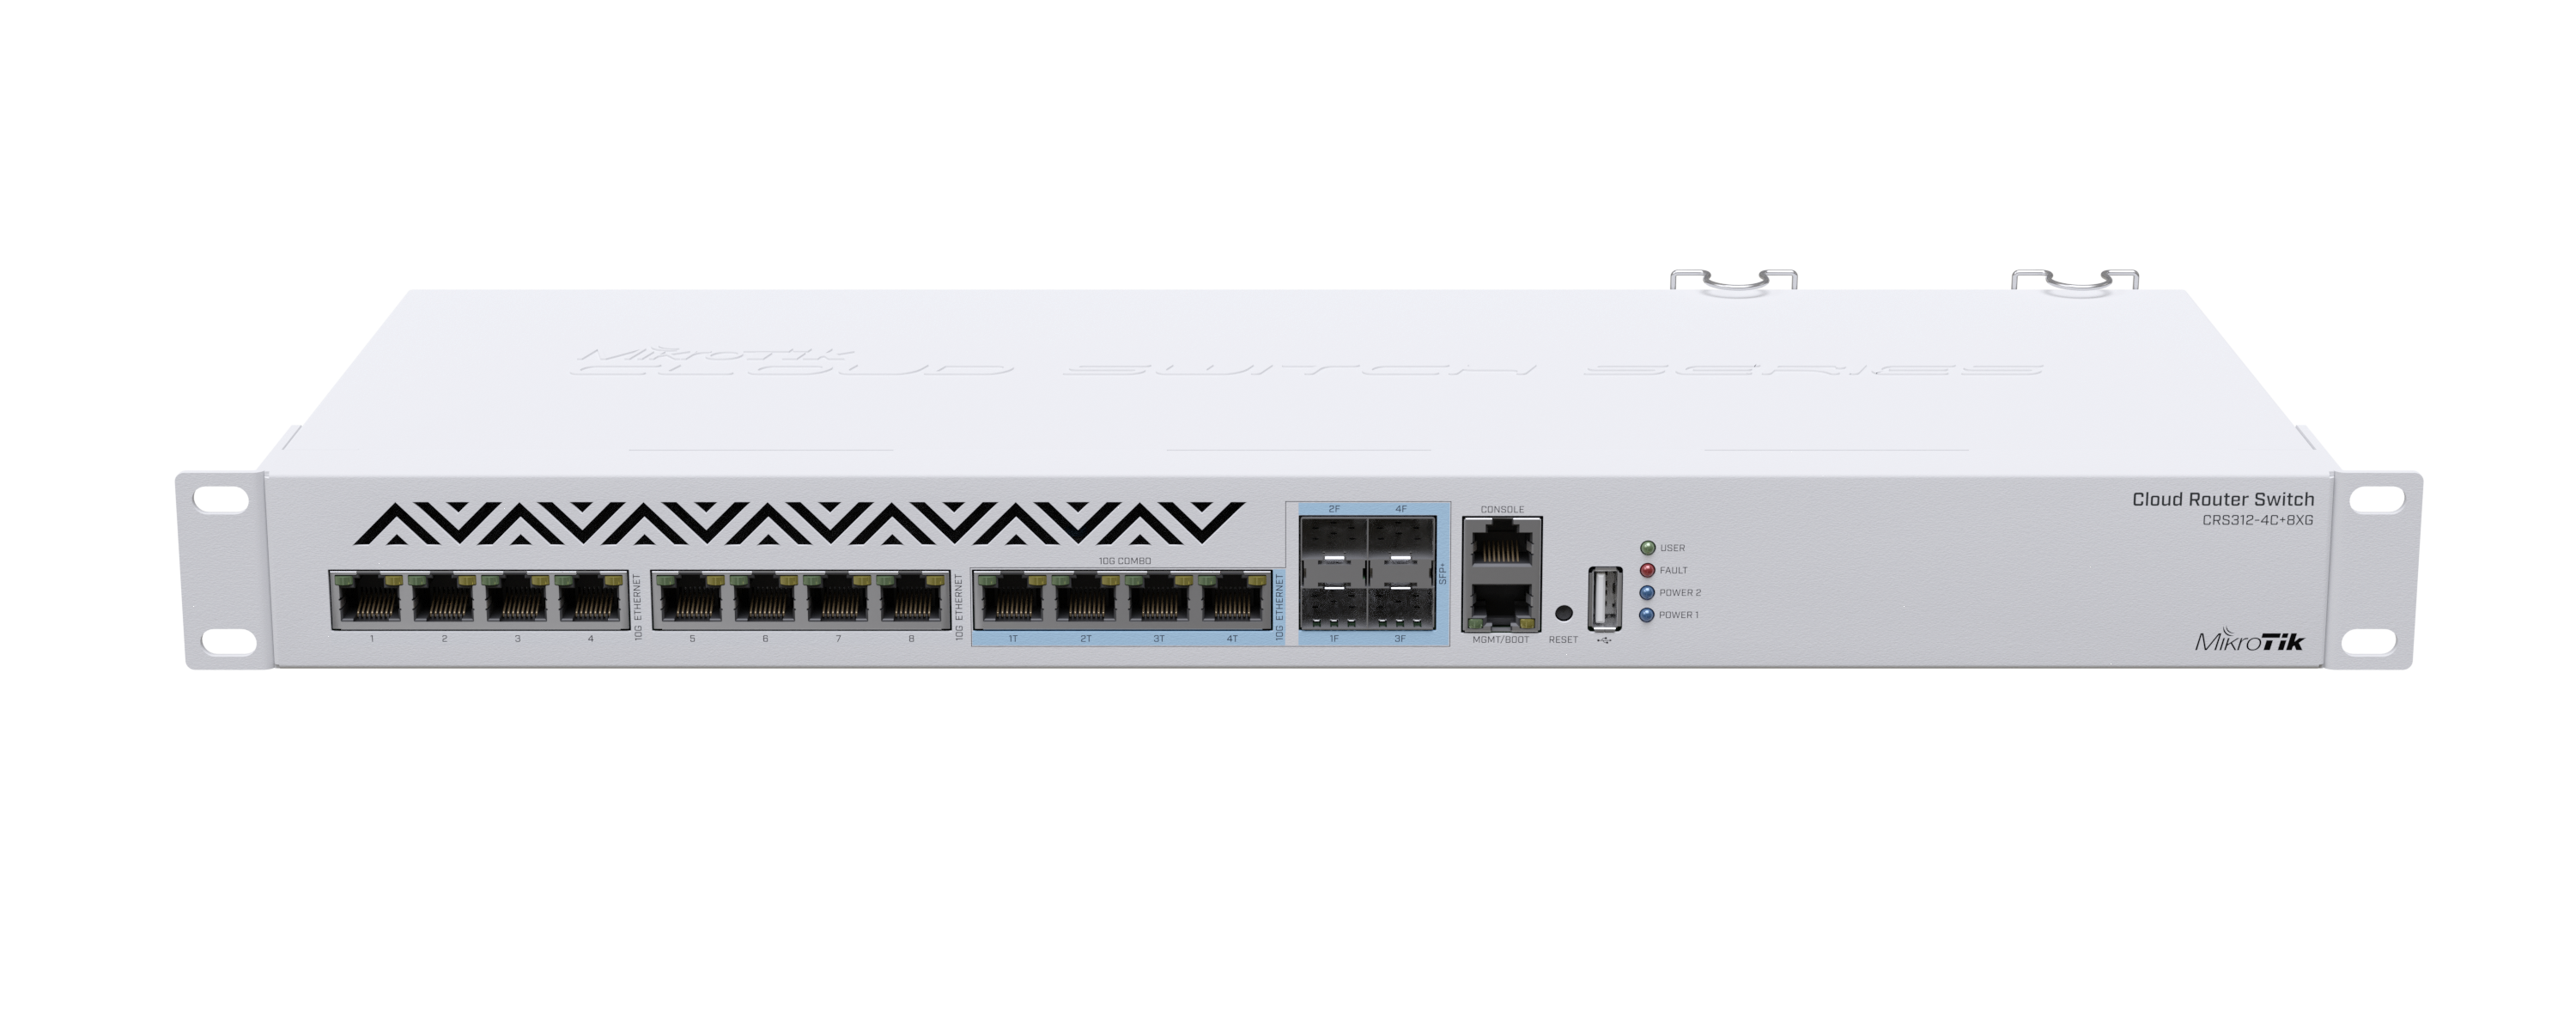 MikroTik CRS312-4C+8XG RM Cloud Router Switch